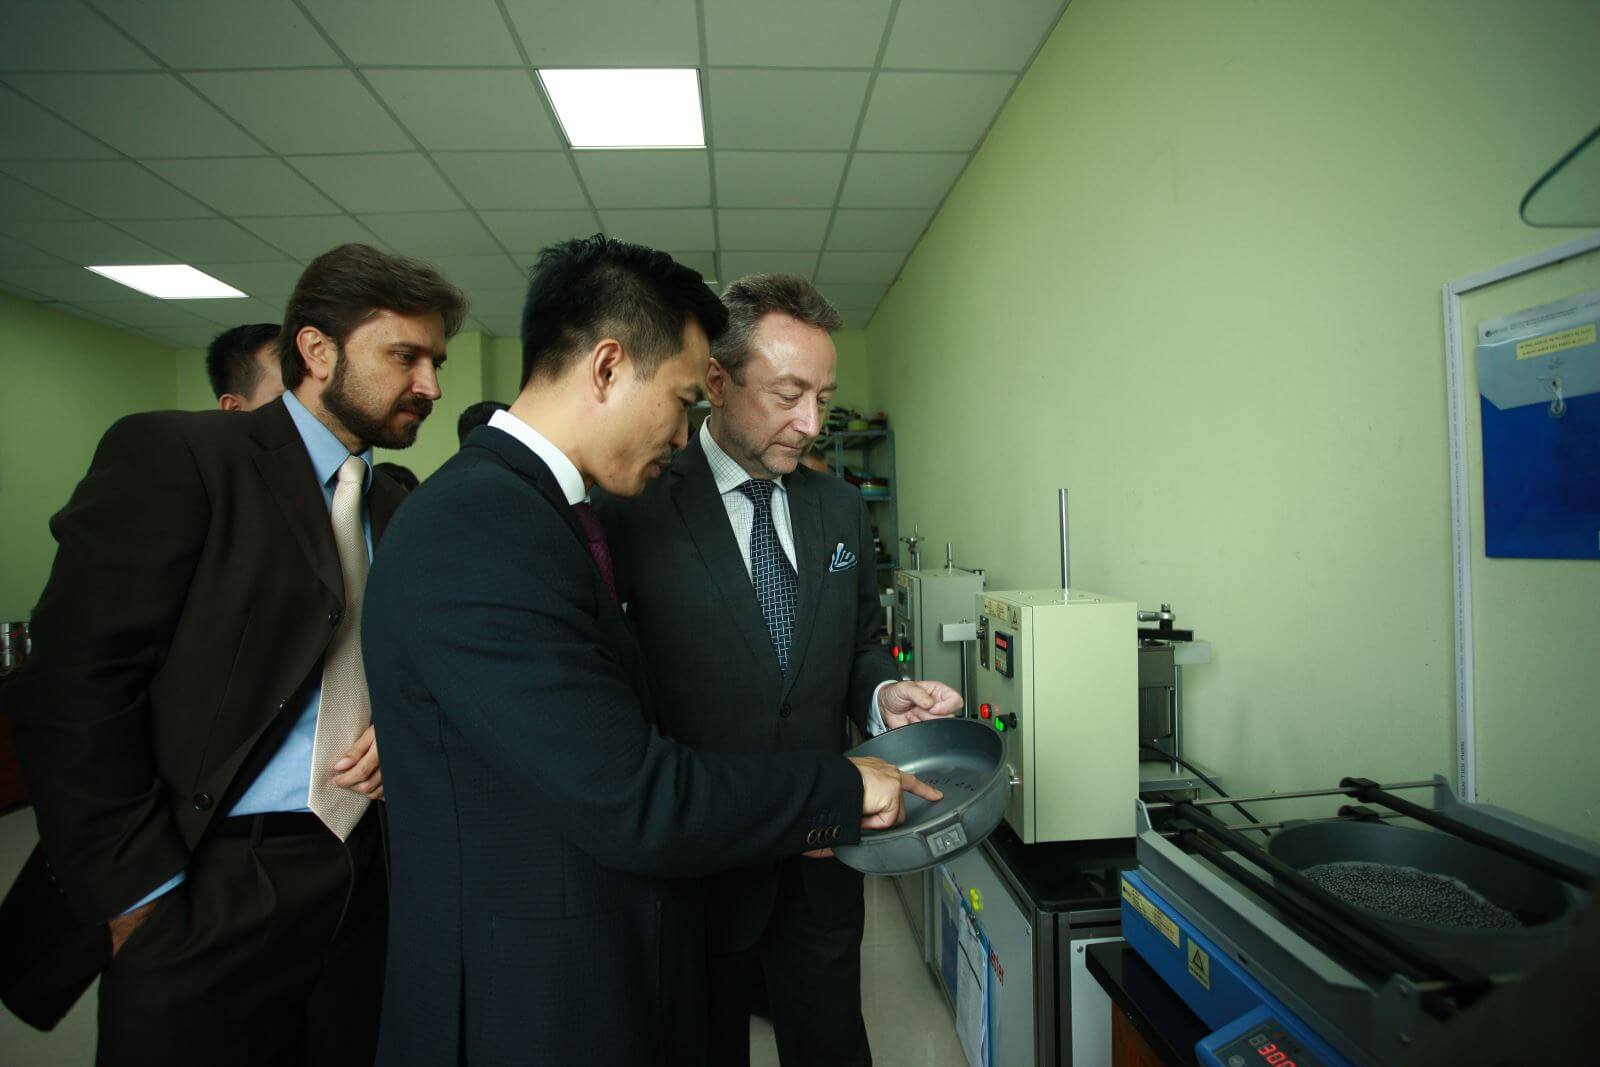 Ngài Đại sứ (ngoài cùng bên phải) và Ngài Tham tán thương mại (ngoài cùng bên trái) tìm hiểu quy trình kiểm định chất lượng sản phẩm của Tập đoàn Elmich